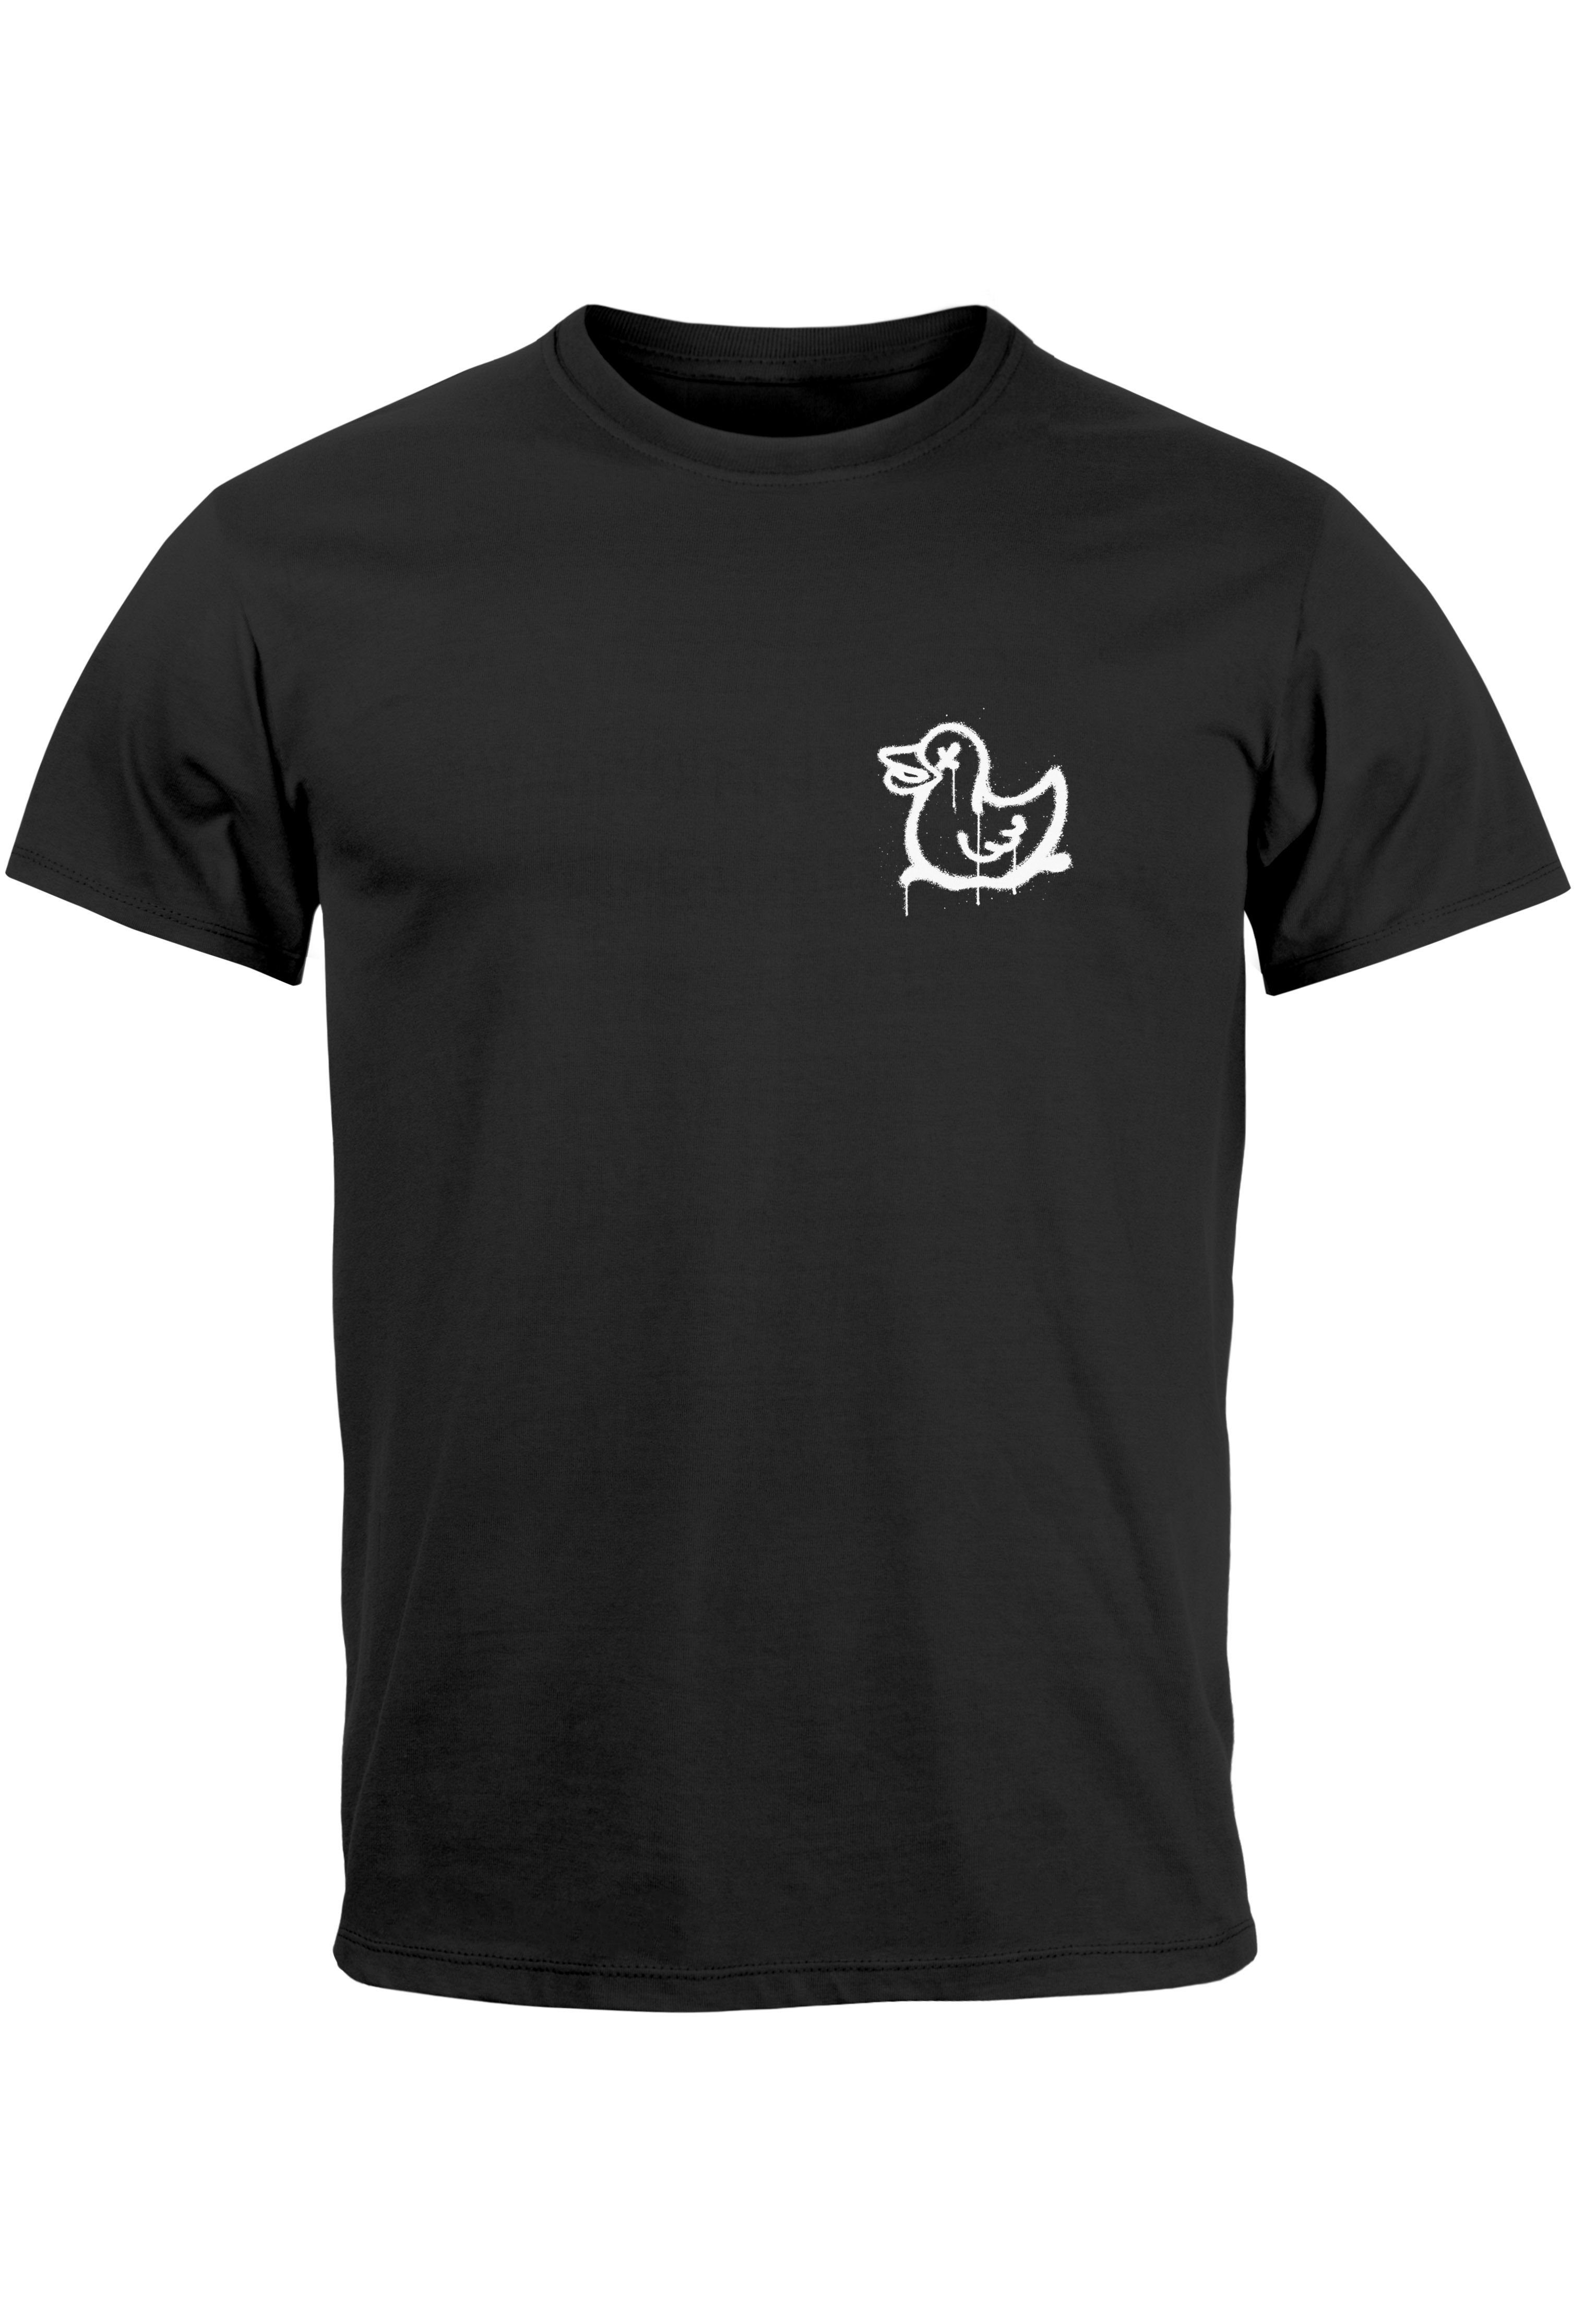 Neverless Print-Shirt Herren T-Shirt Drippy Duck Ente Graffiti Style Printshirt Fashion Stre mit Print schwarz